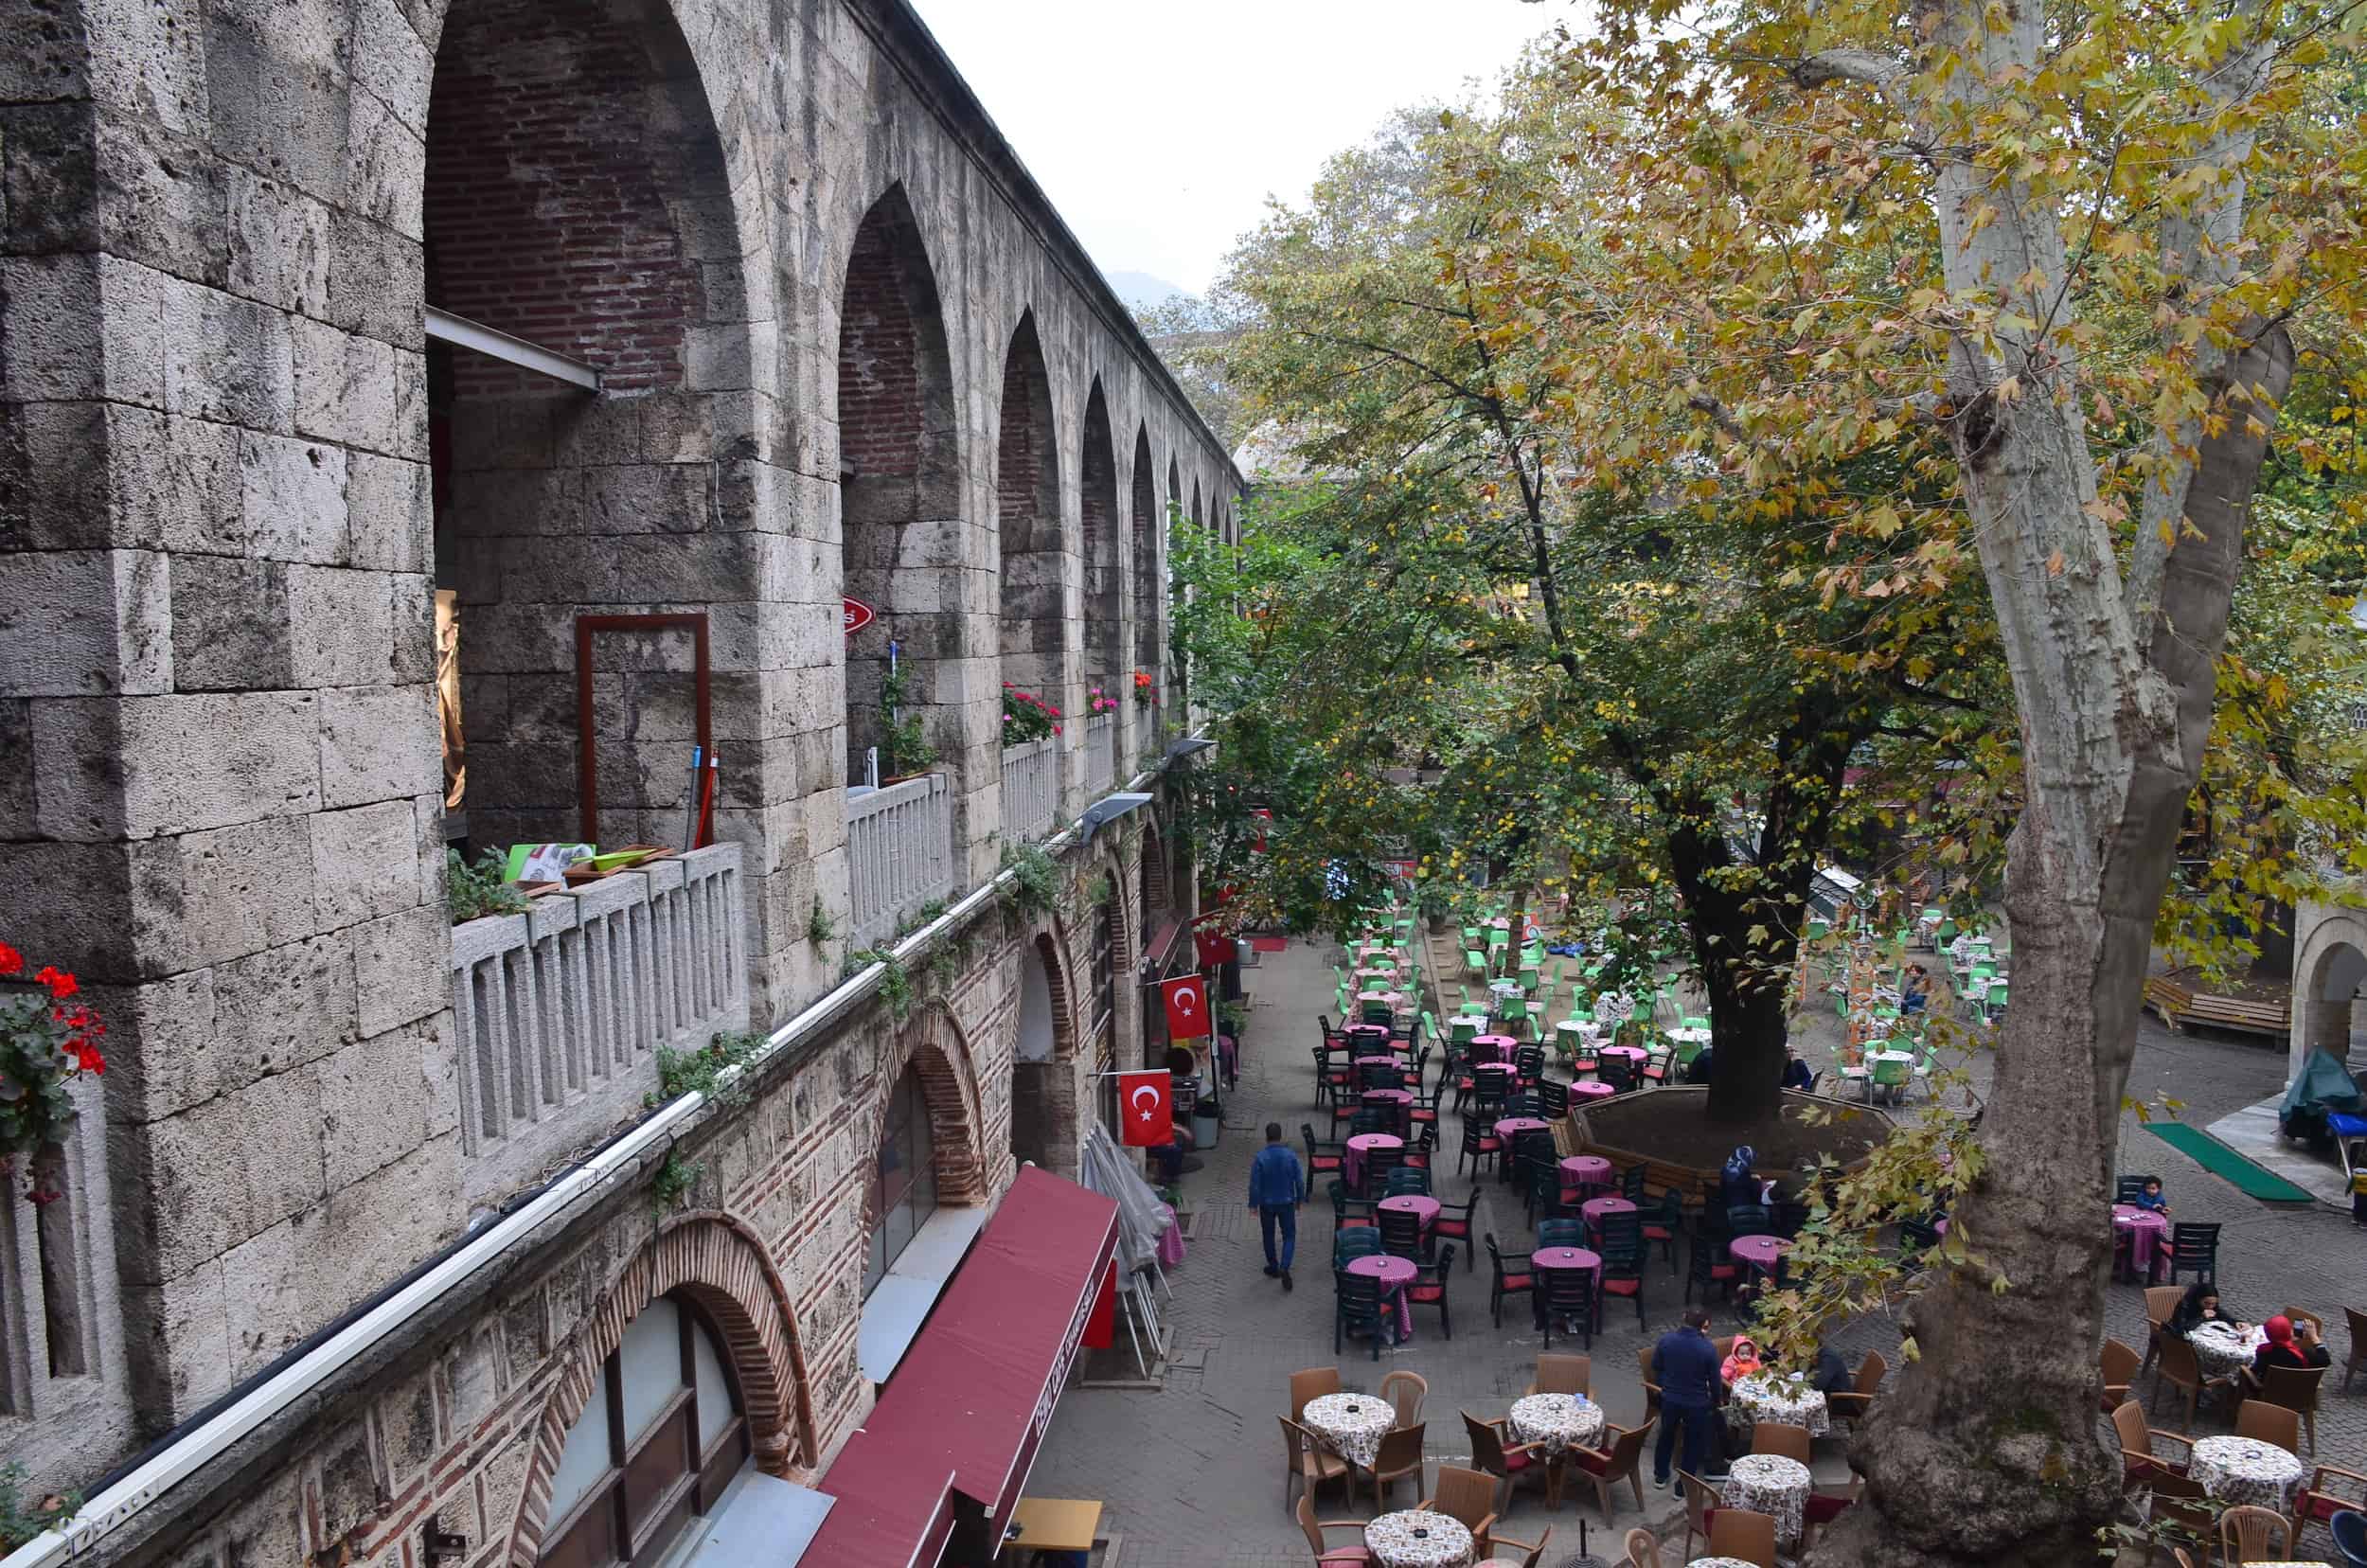 Courtyard of Koza Han in Bursa, Turkey